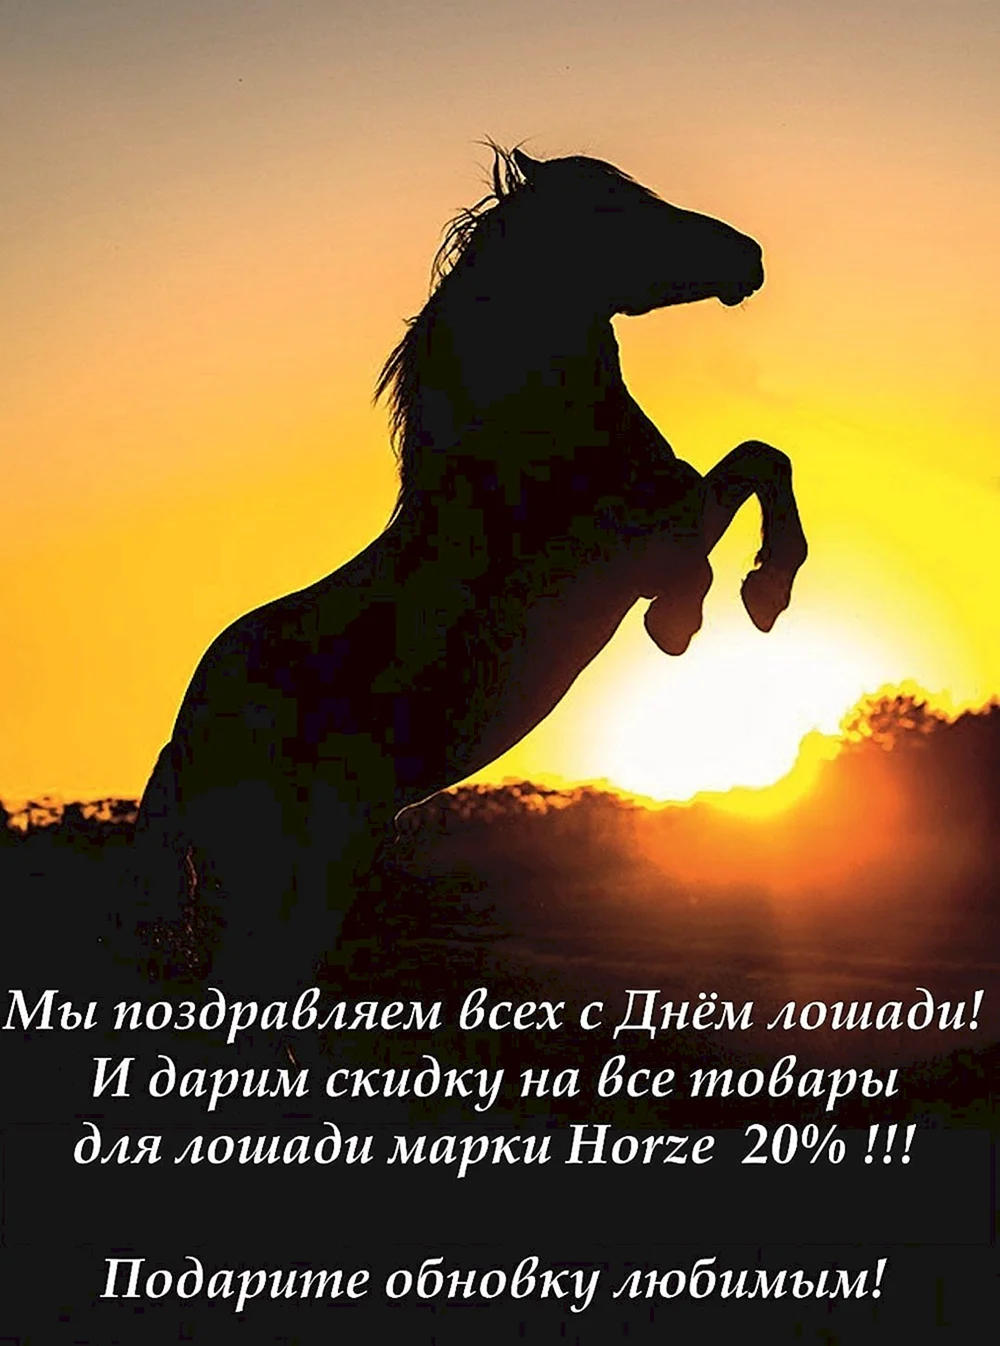 Красивая открытка с днем рождения с лошадью - скачать бесплатно на сайте уральские-газоны.рф